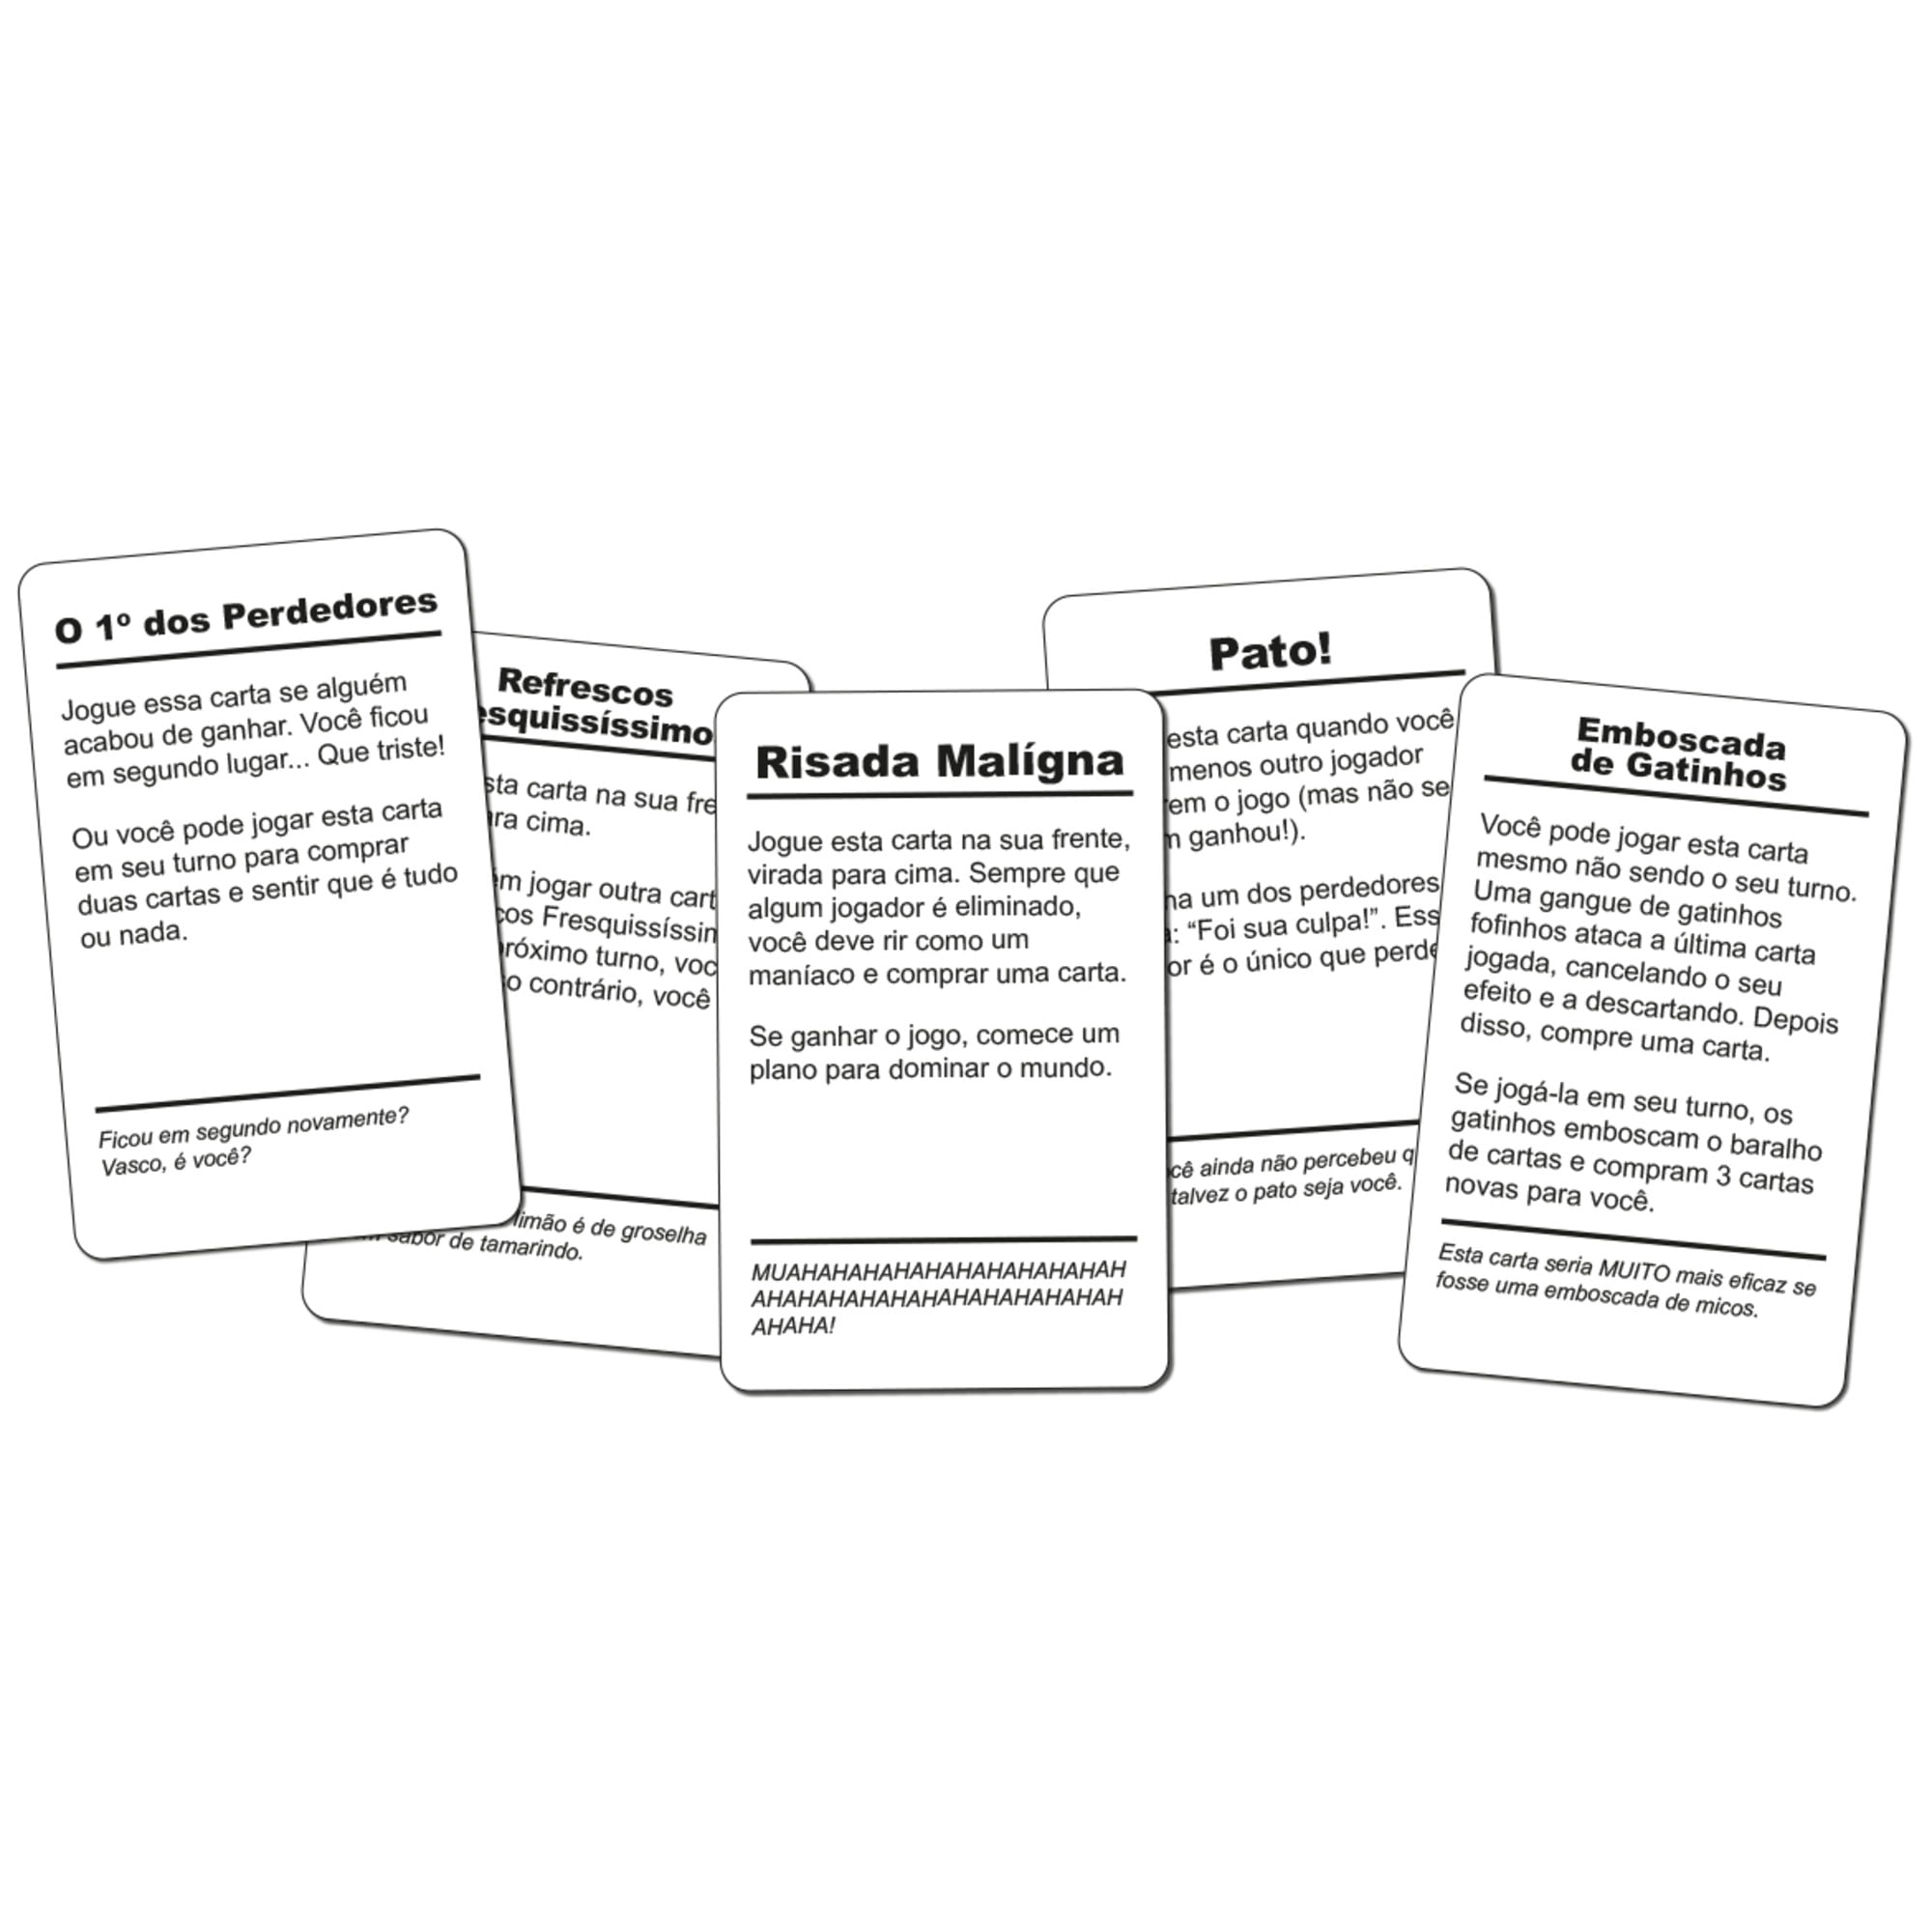 FDP - Foi de Propósito 4 - Jogo de Carta - Buró - Jogos de Cartas